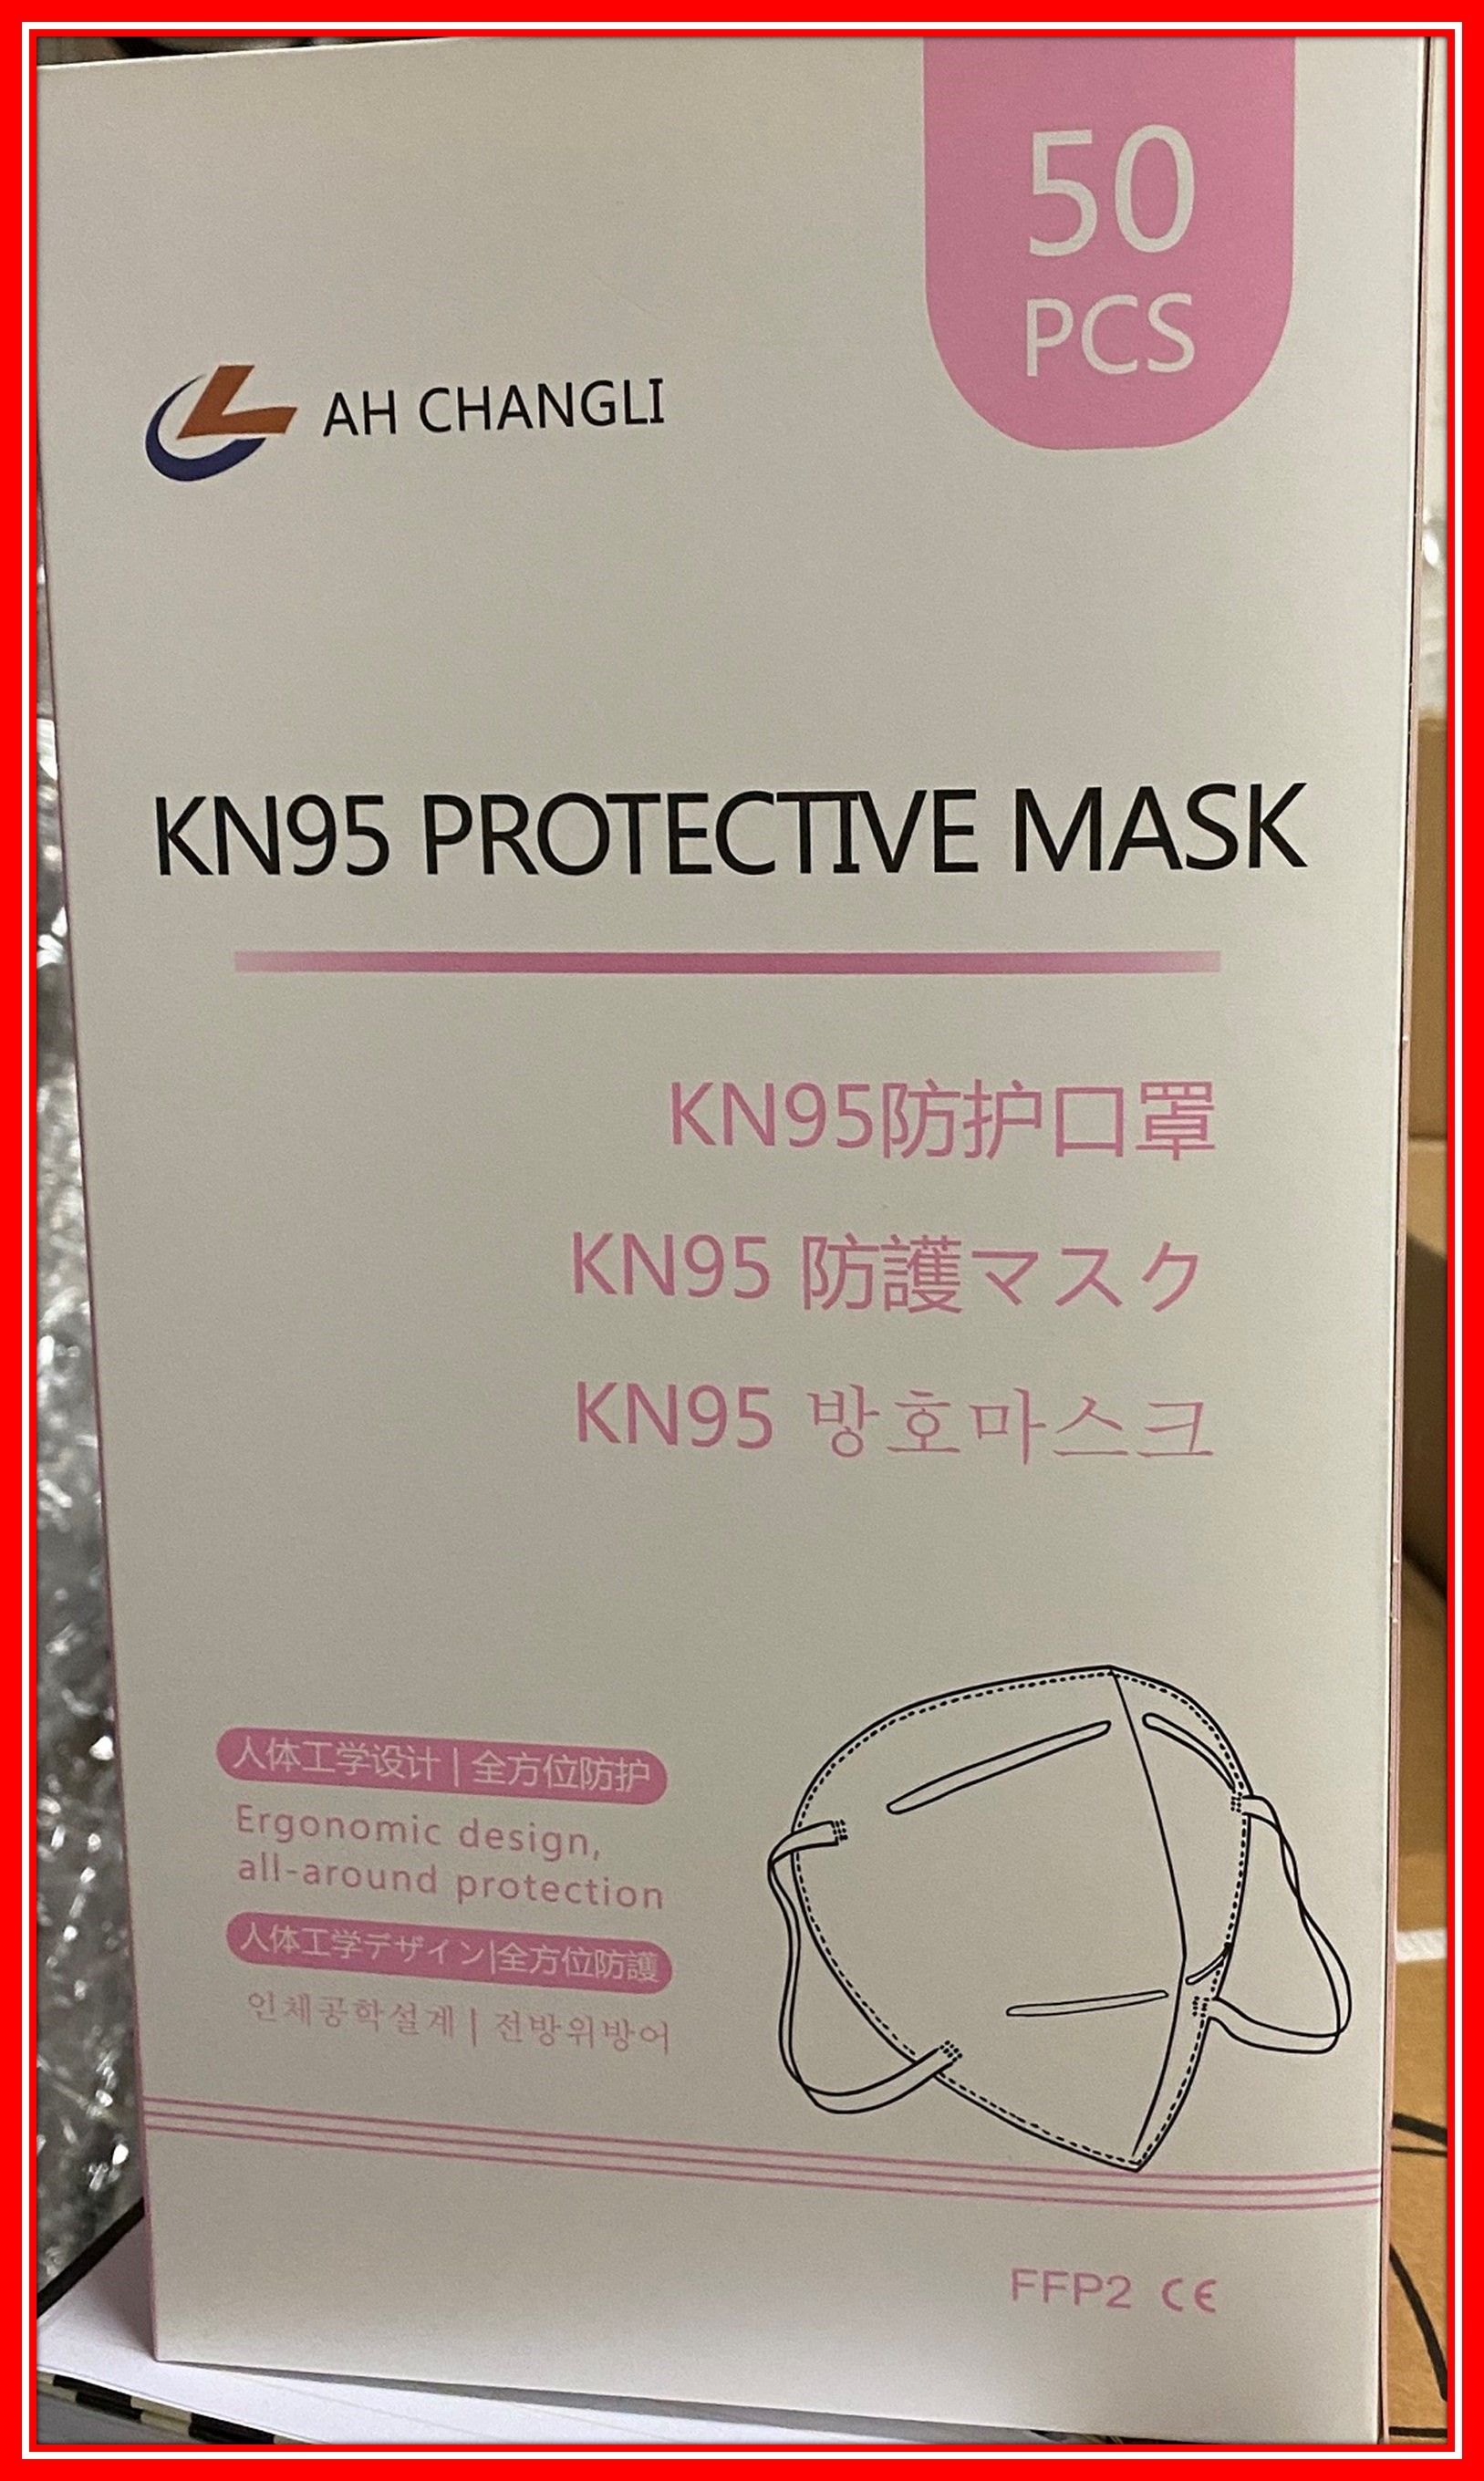 A12 01217 20 Ah Changli Kn95 Protective Mask 01